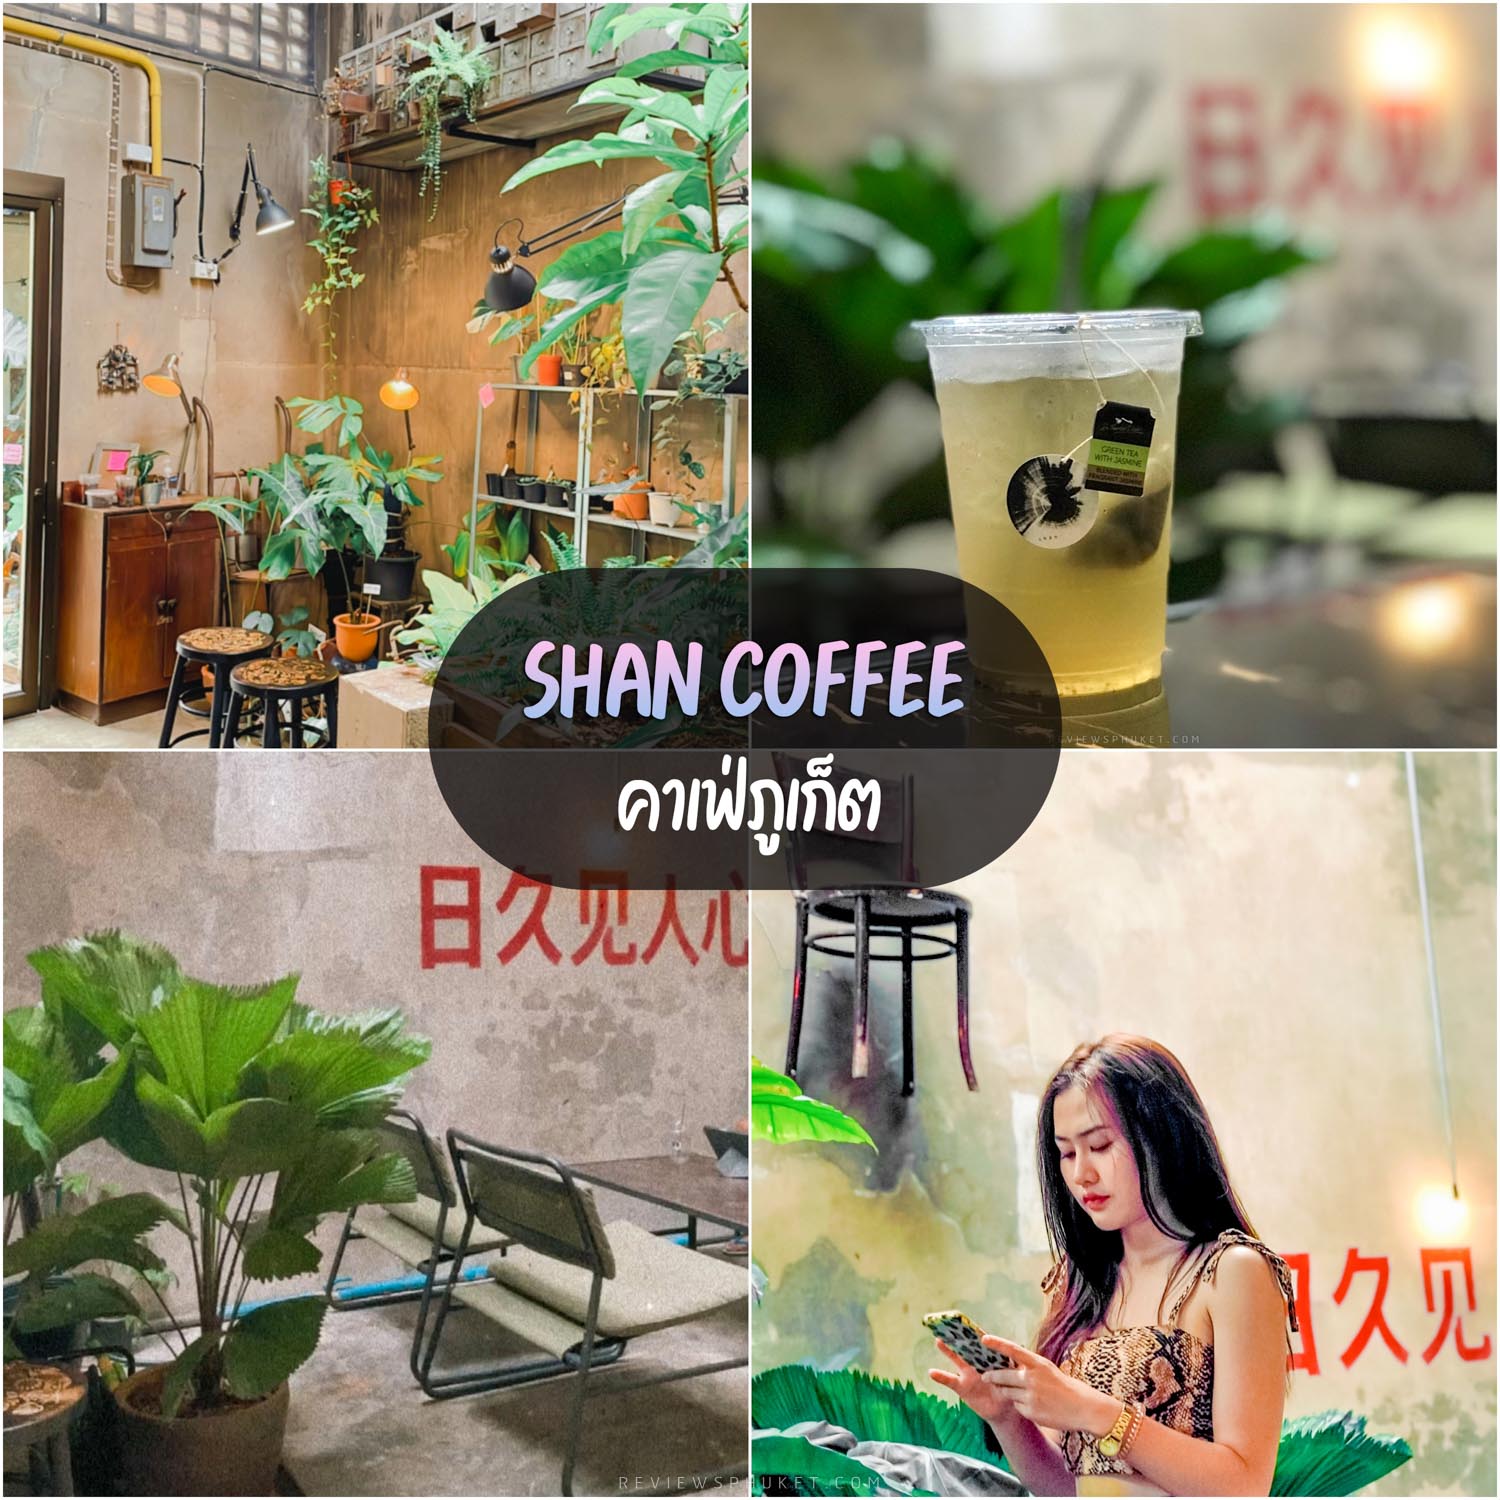 Кофе Шан, кафе Пхукета, секретная кофейня, оформленная в неповторимом стиле, хороший кофе.